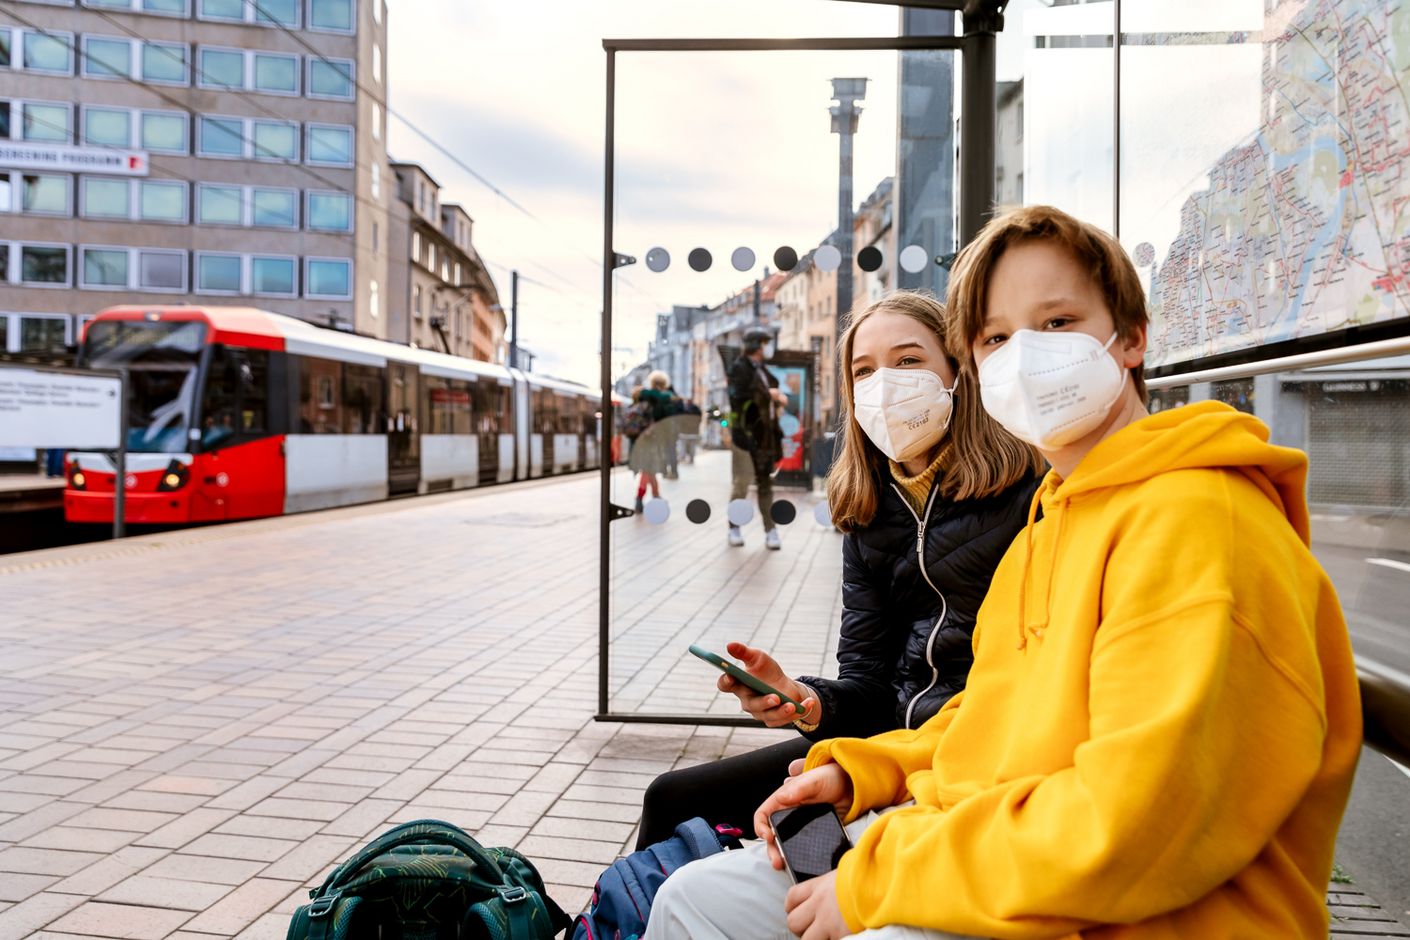 Zwei junge Frauen mit Masken warten auf ihren Zug und sind trotz der Pandemie-bedingten Einschränkungen gut gelaunt.